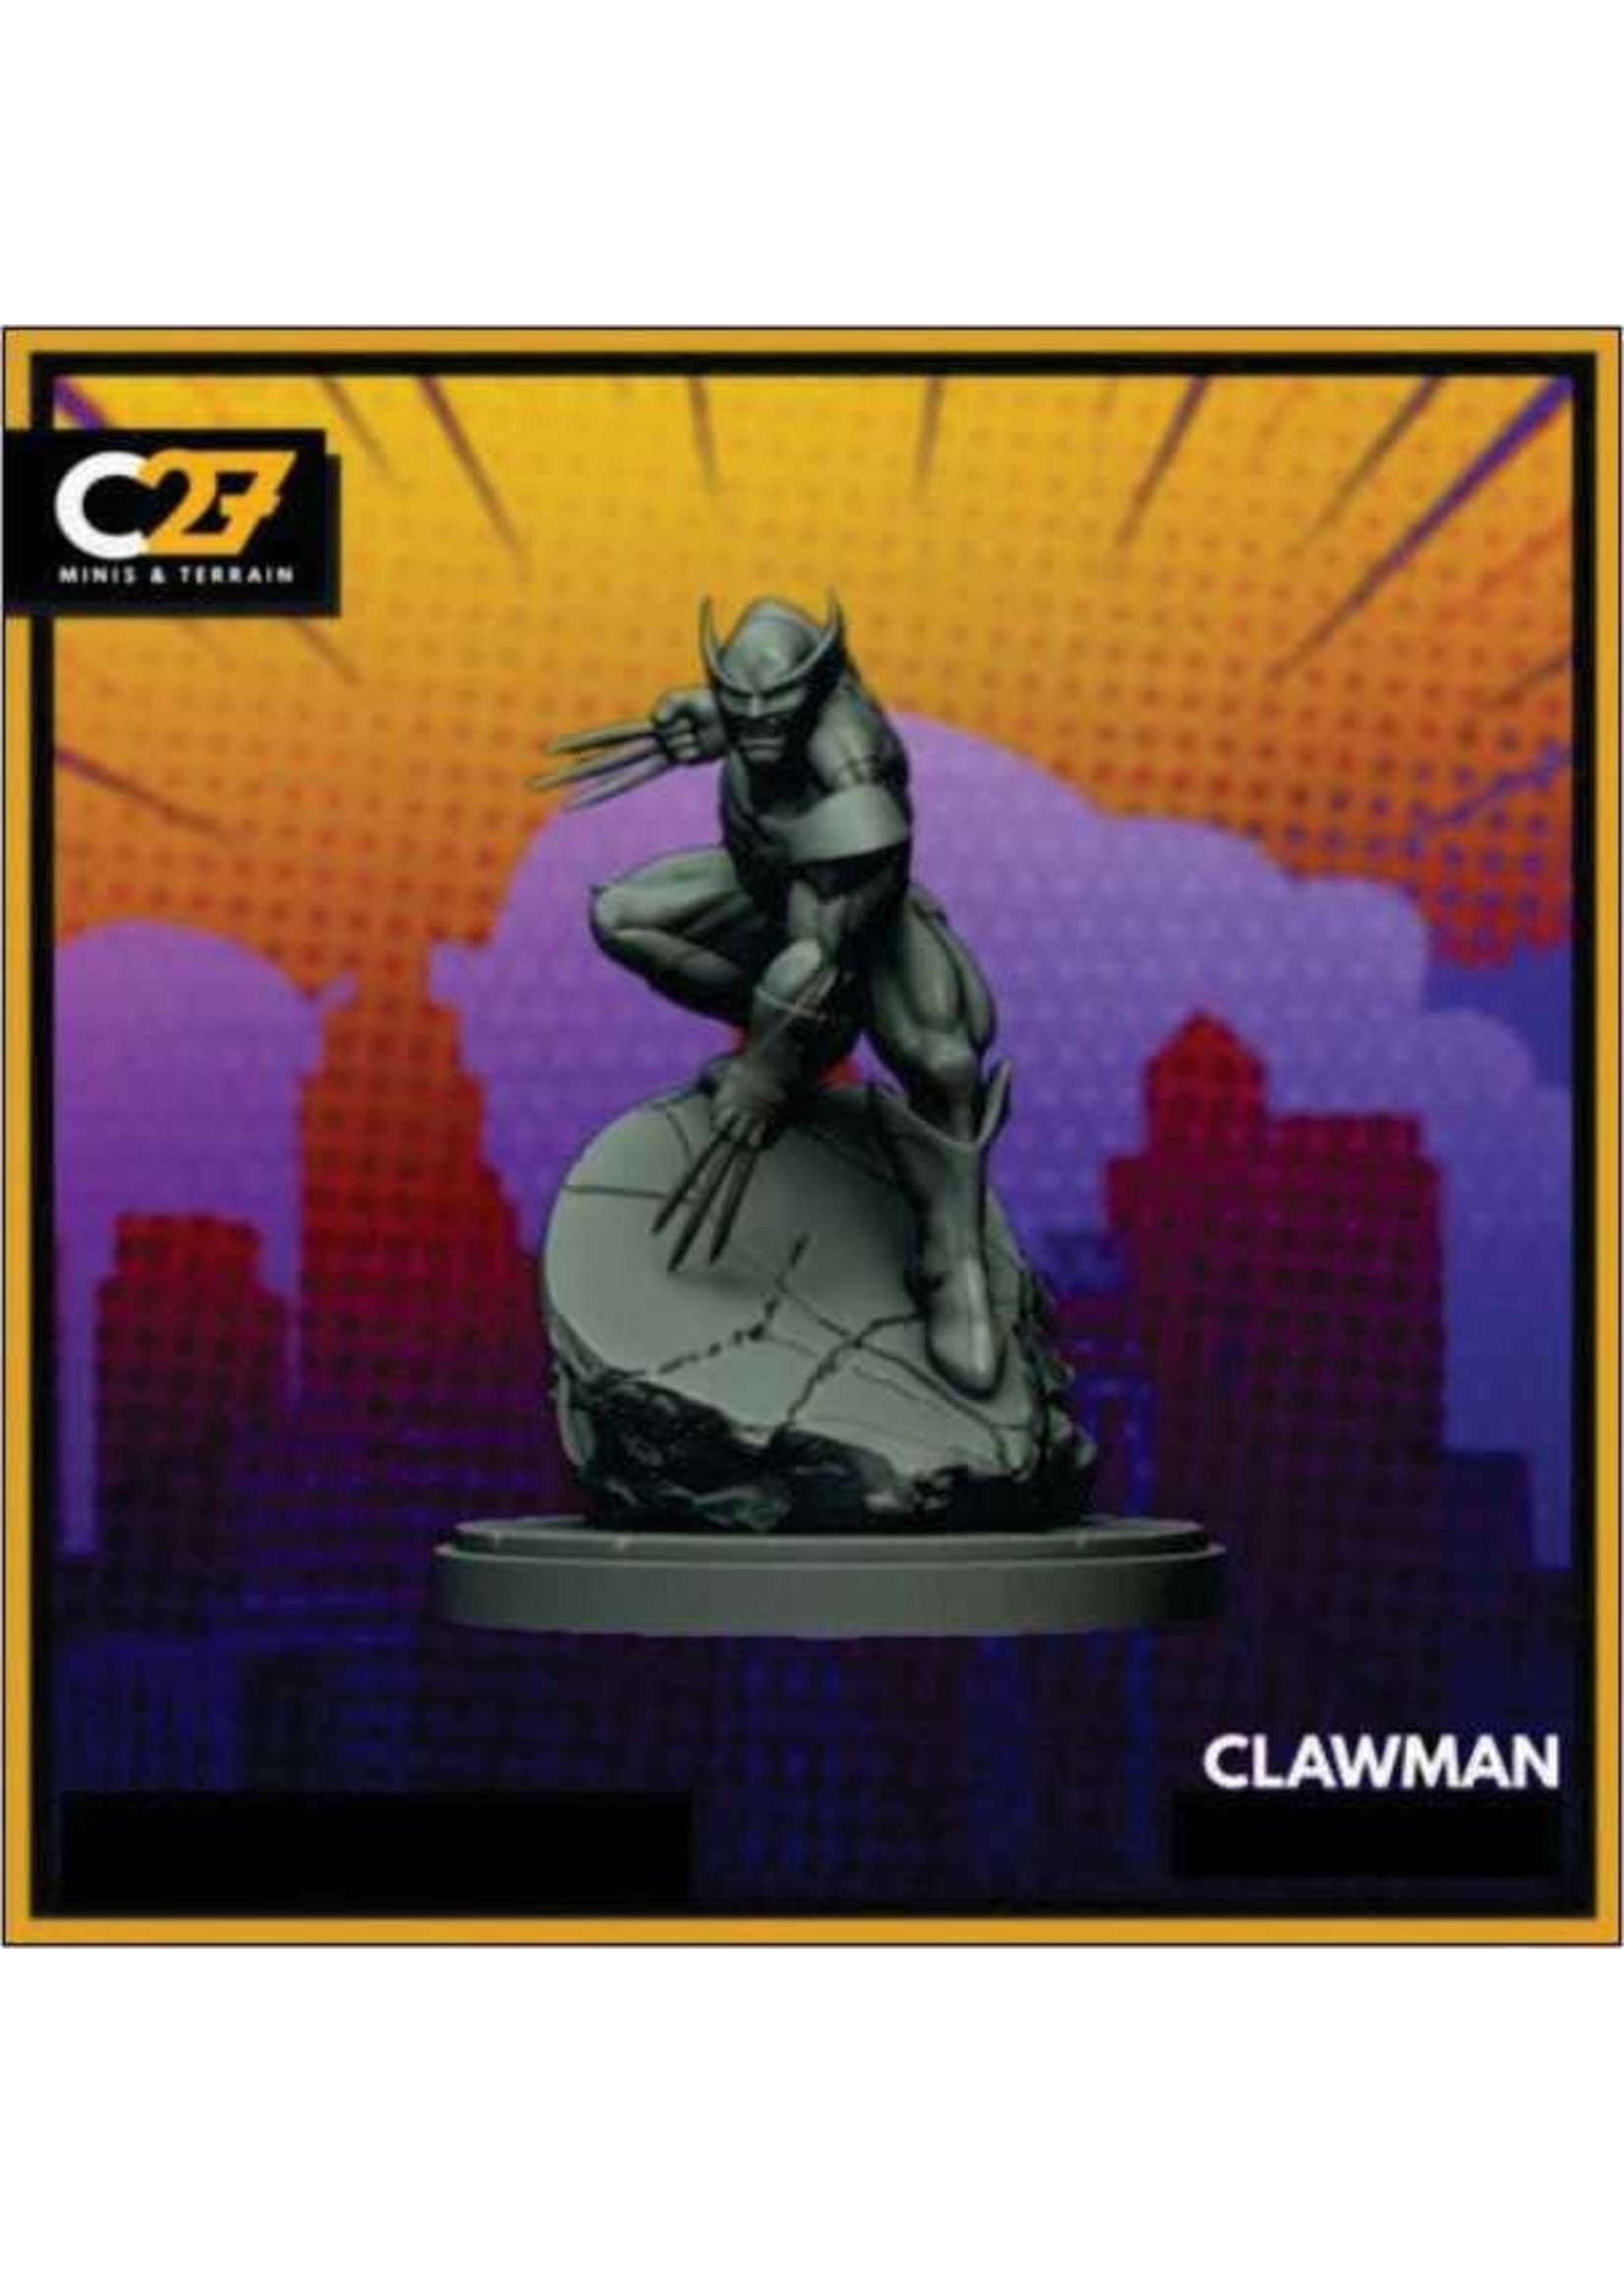 C27 Miniatures C27 Miniatures - Clawman